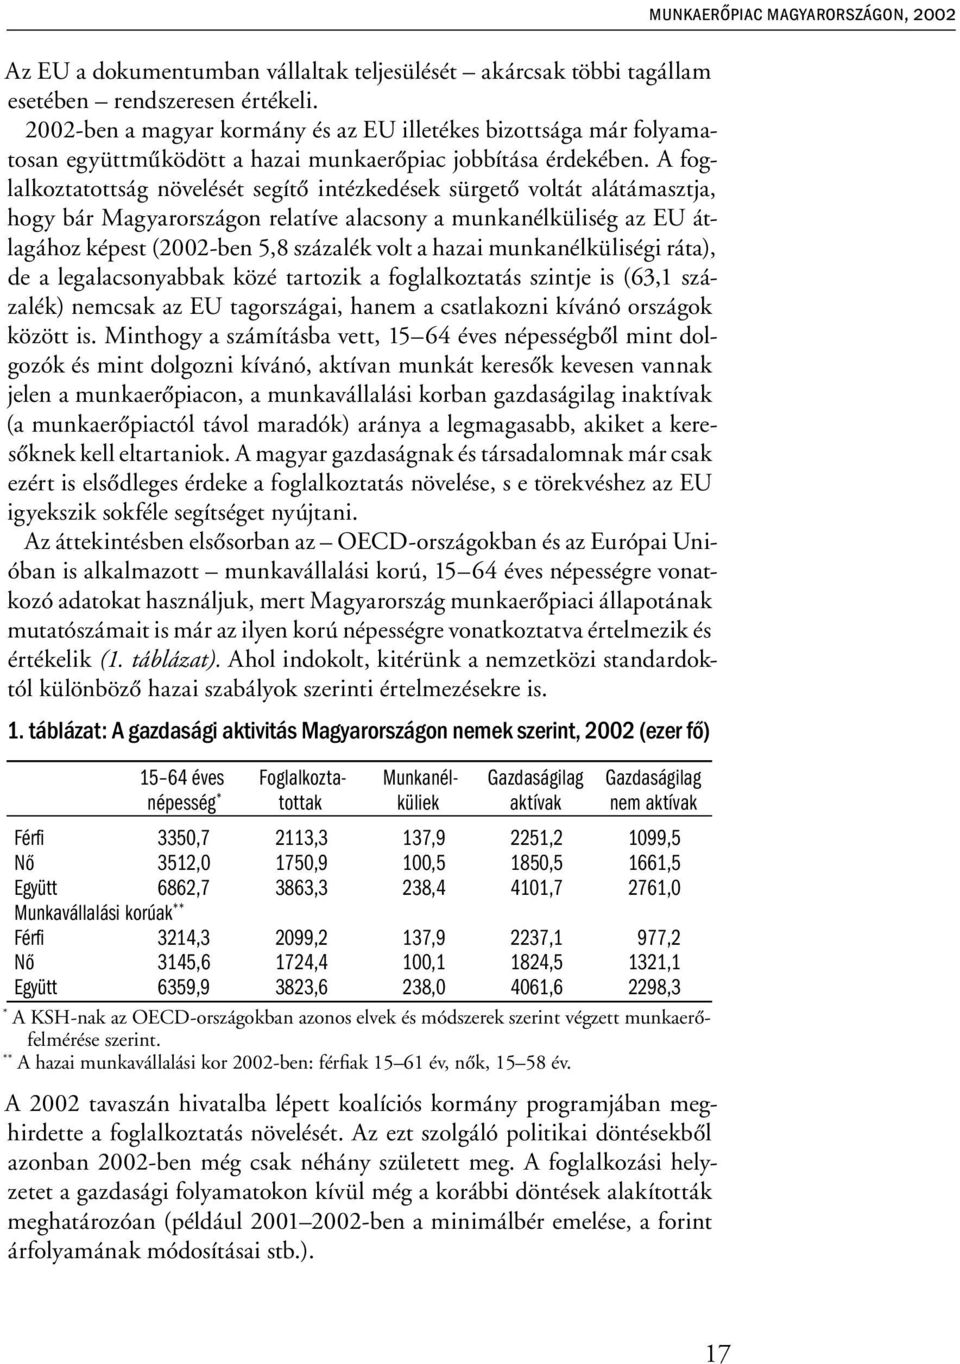 A foglalkoztatottság növelését segítő intézkedések sürgető voltát alátámasztja, hogy bár Magyarországon relatíve alacsony a munkanélküliség az EU átlagához képest (2002-ben 5,8 százalék volt a hazai